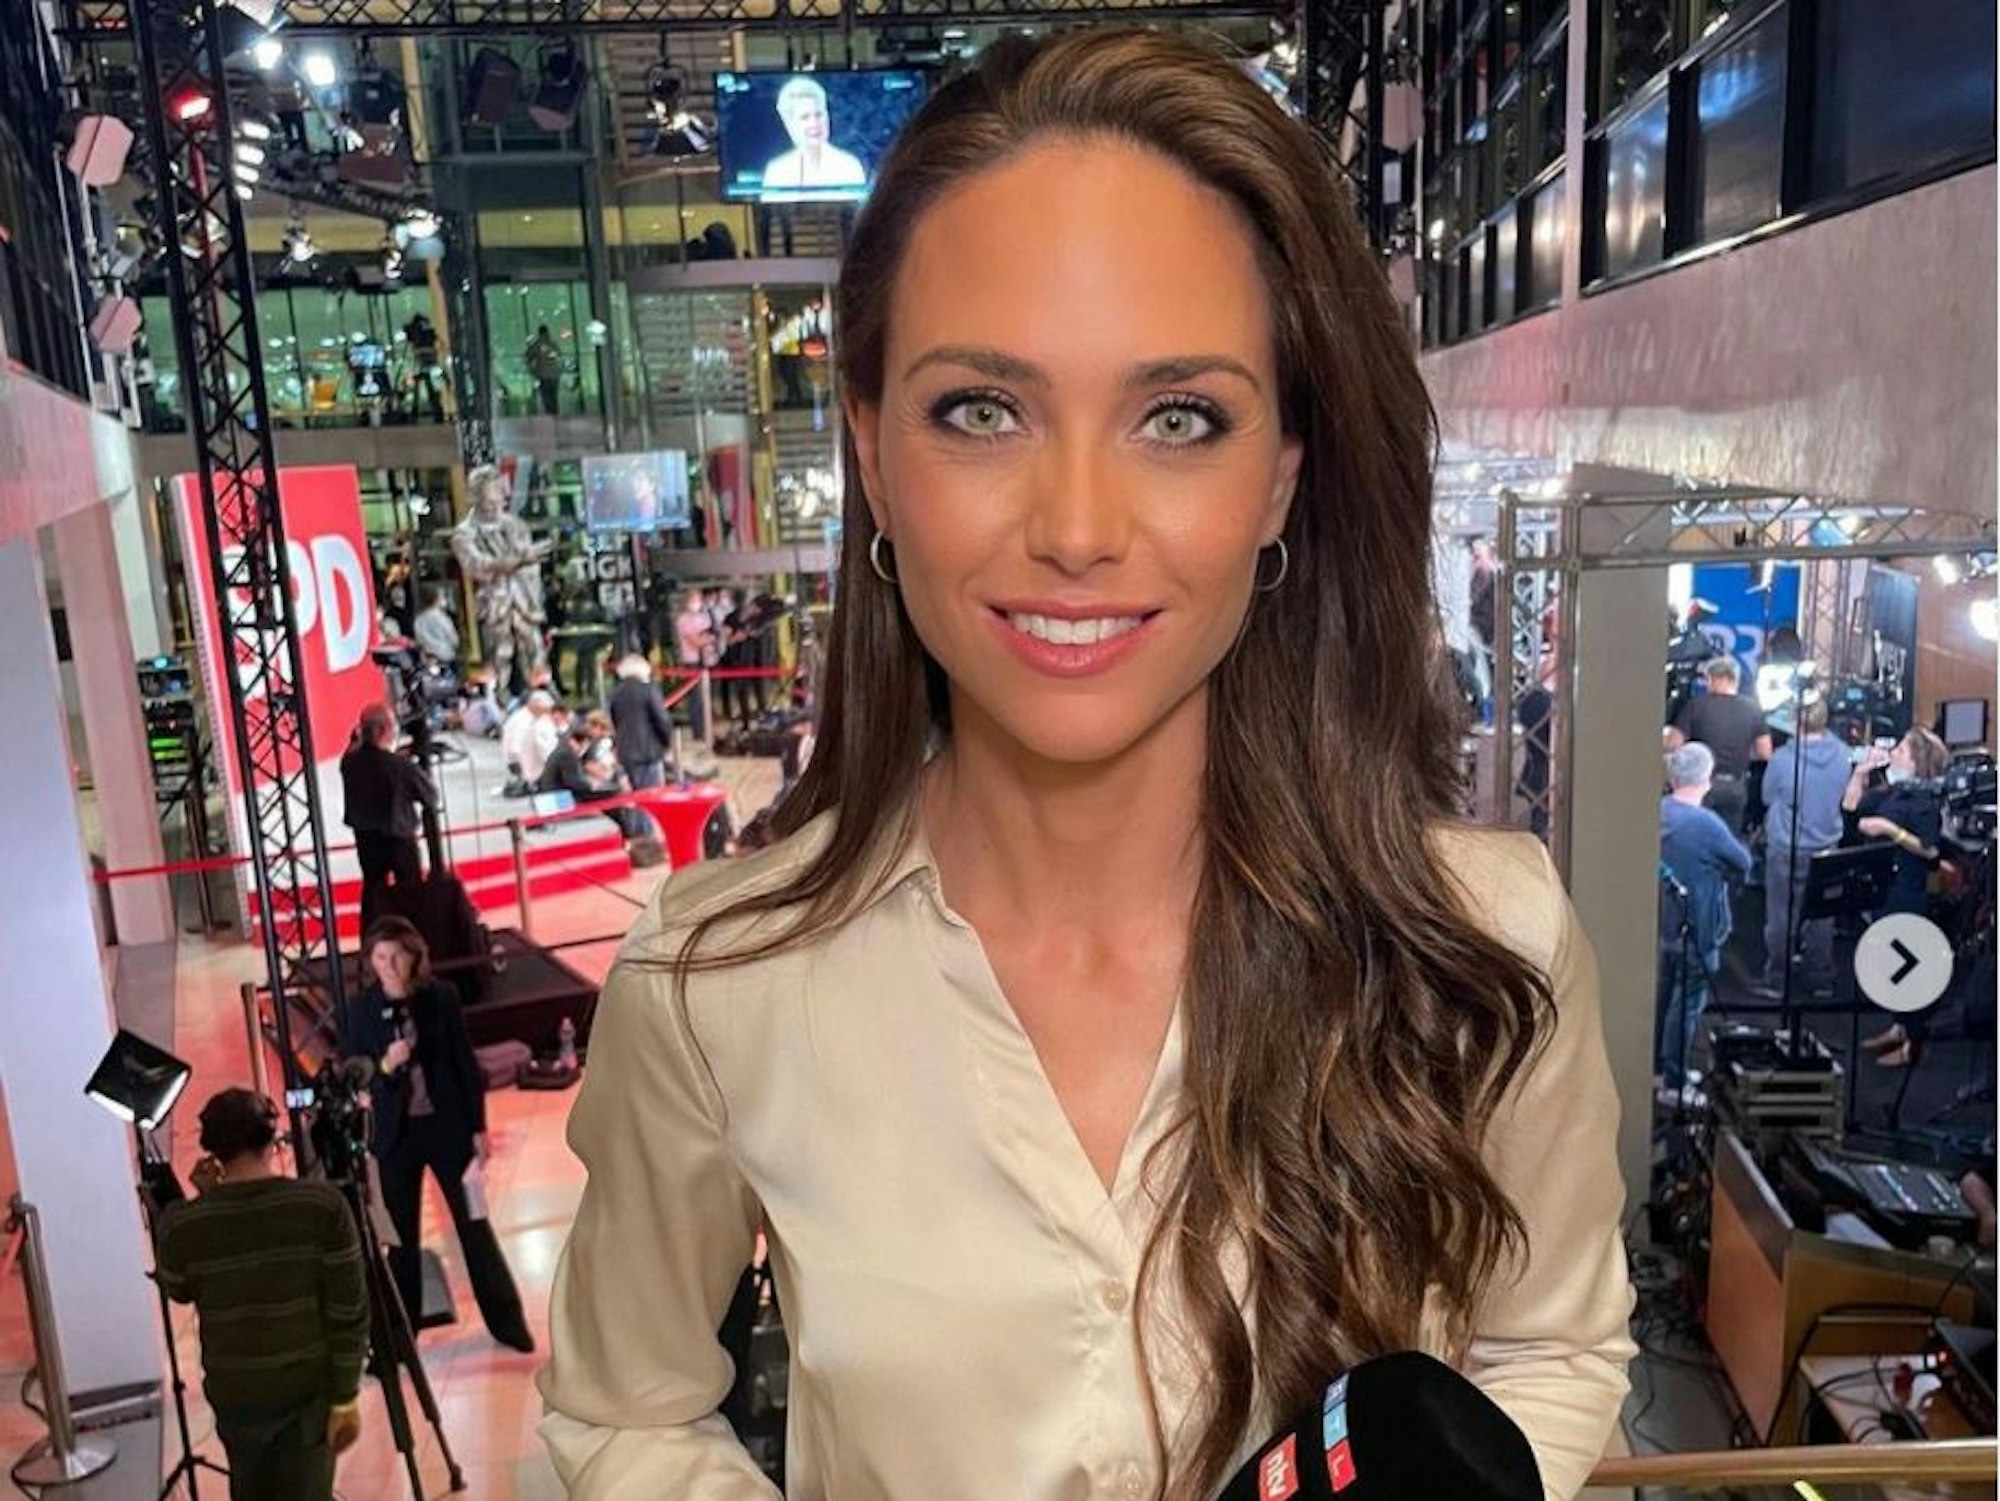 RTL-Moderatorin Franca Lehfeldt ist am 27. September kurz nach der Bundestagswahl im Willy-Brandt-Haus zu sehen, sie hat ein Mikro in der Hand und lächelt in die Kamera.